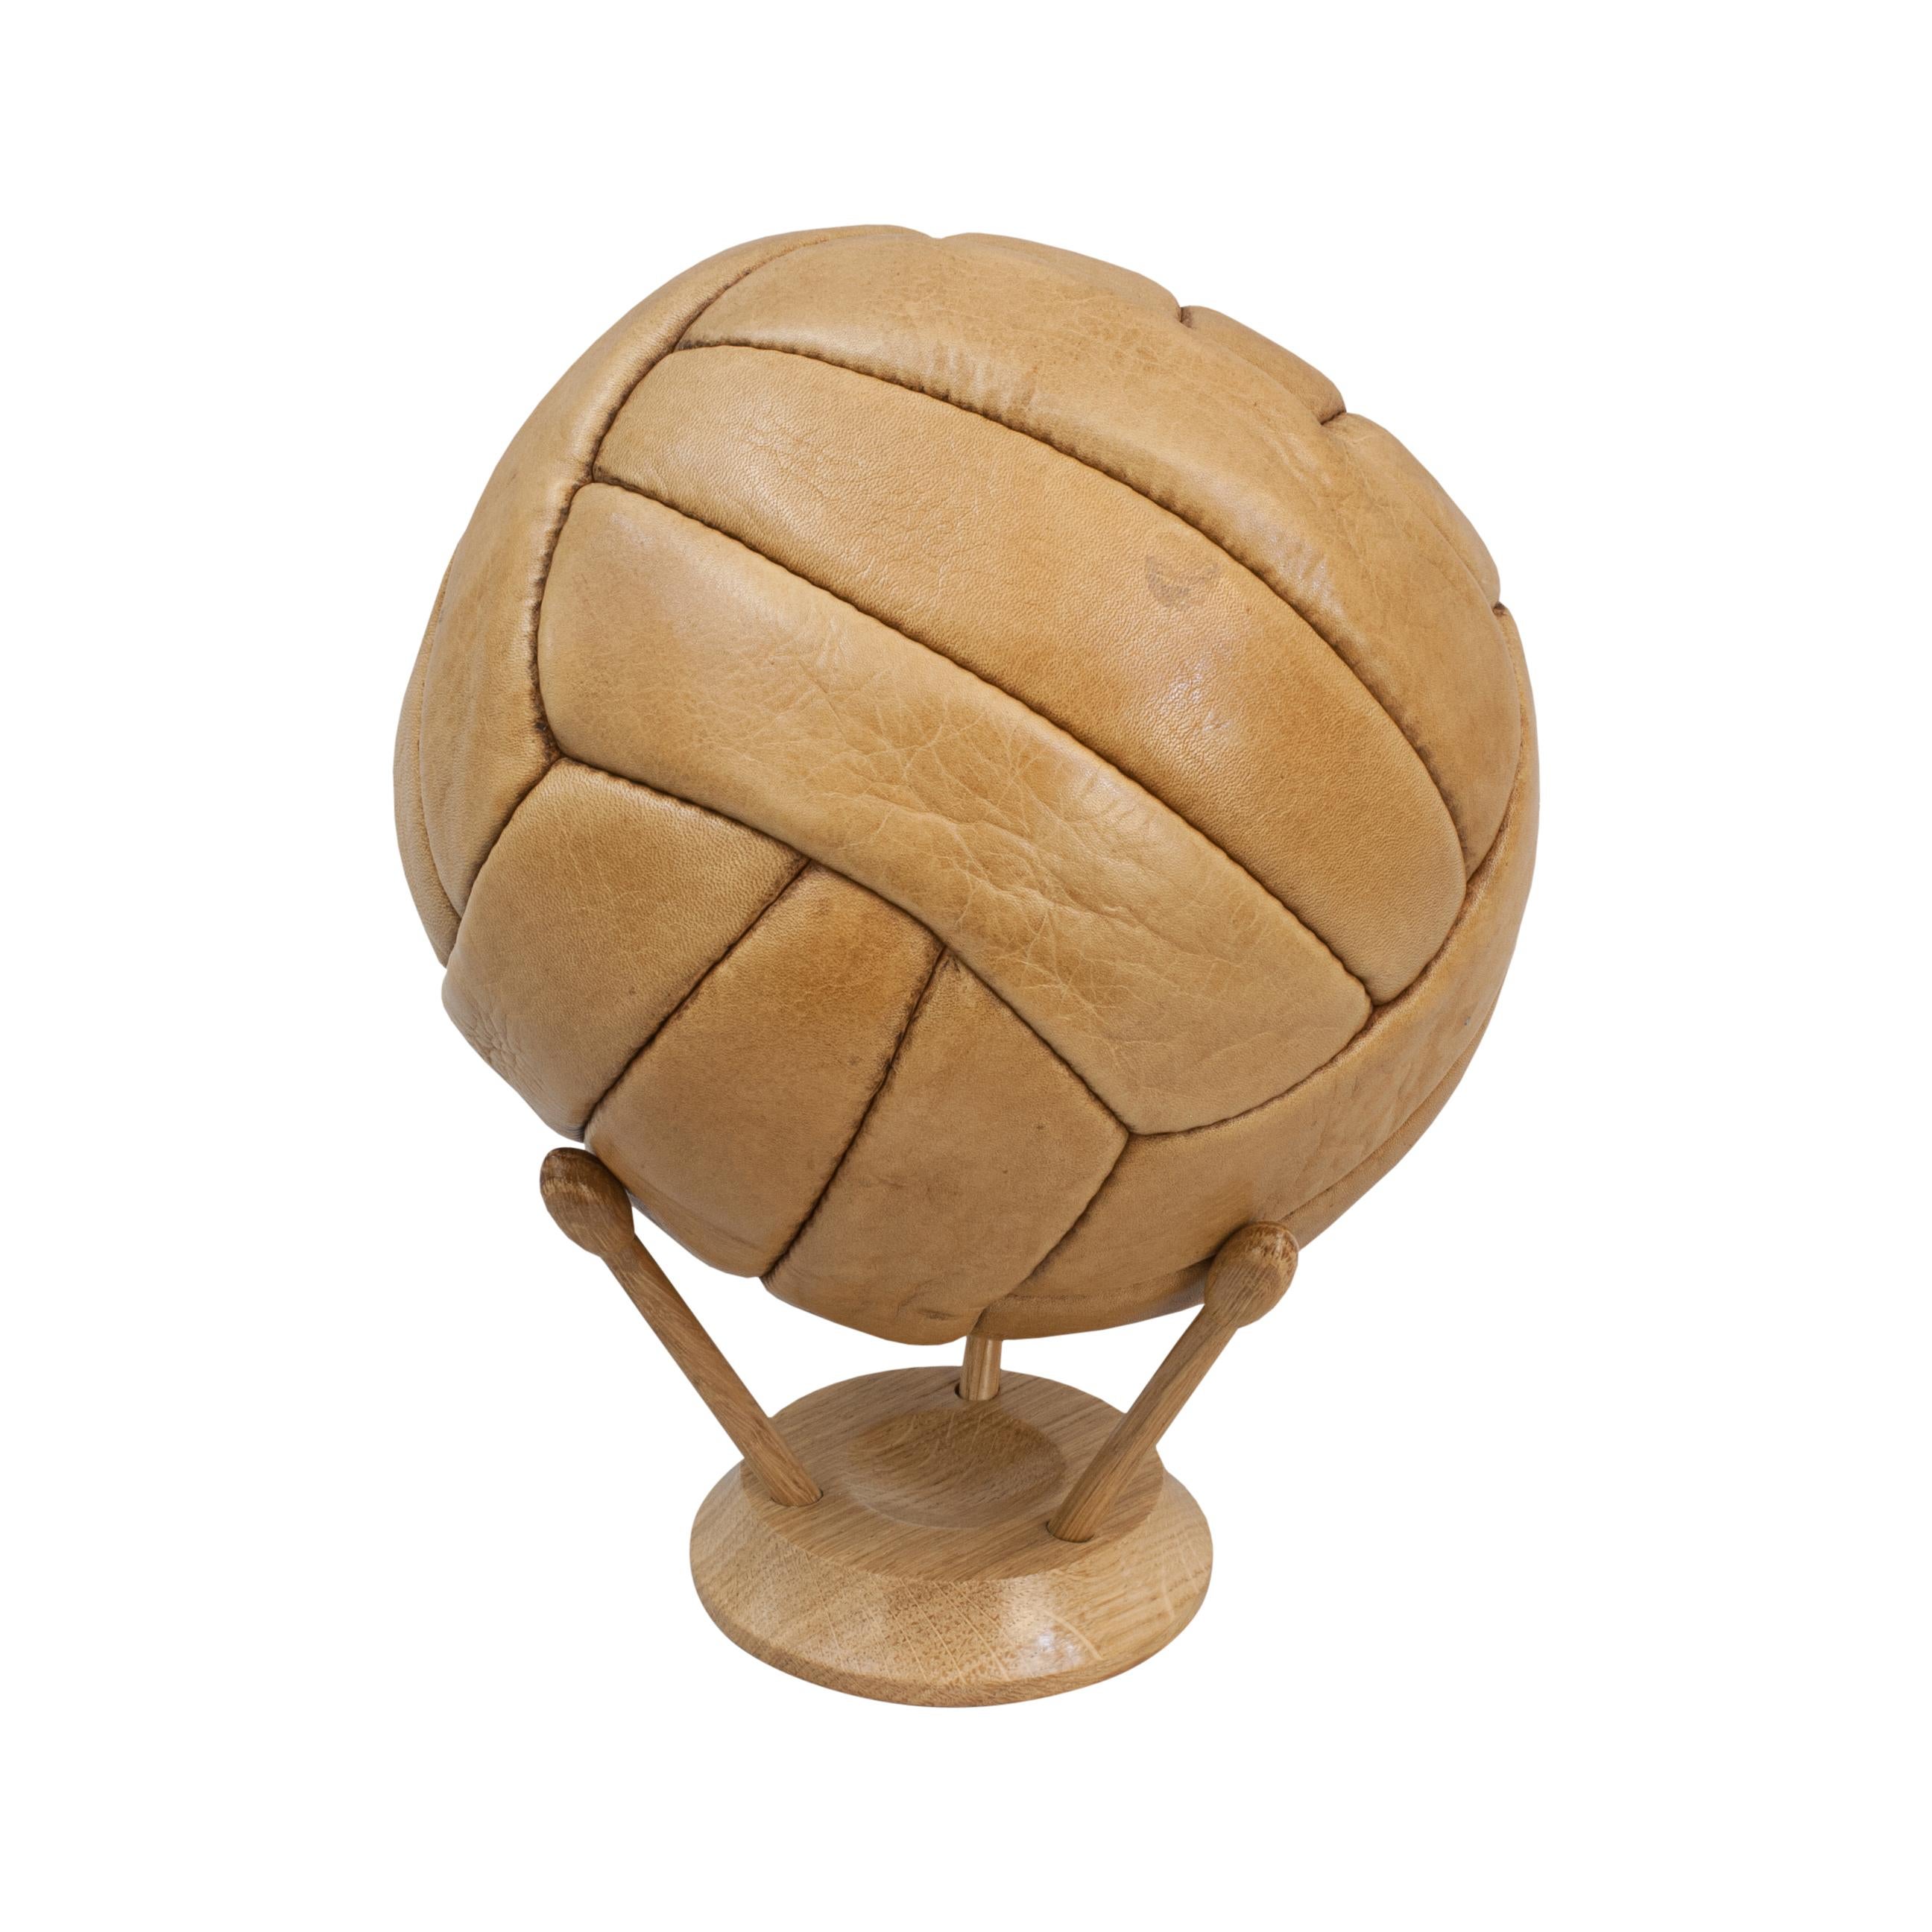 Un ballon de football en cuir vintage à 18 panneaux.
Un ballon de football vintage en cuir avec dix-huit panneaux de cuir et un trou de valve sur le dessus pour permettre le gonflage de la vessie. Cuir en bon état.
Même design que le ballon de la